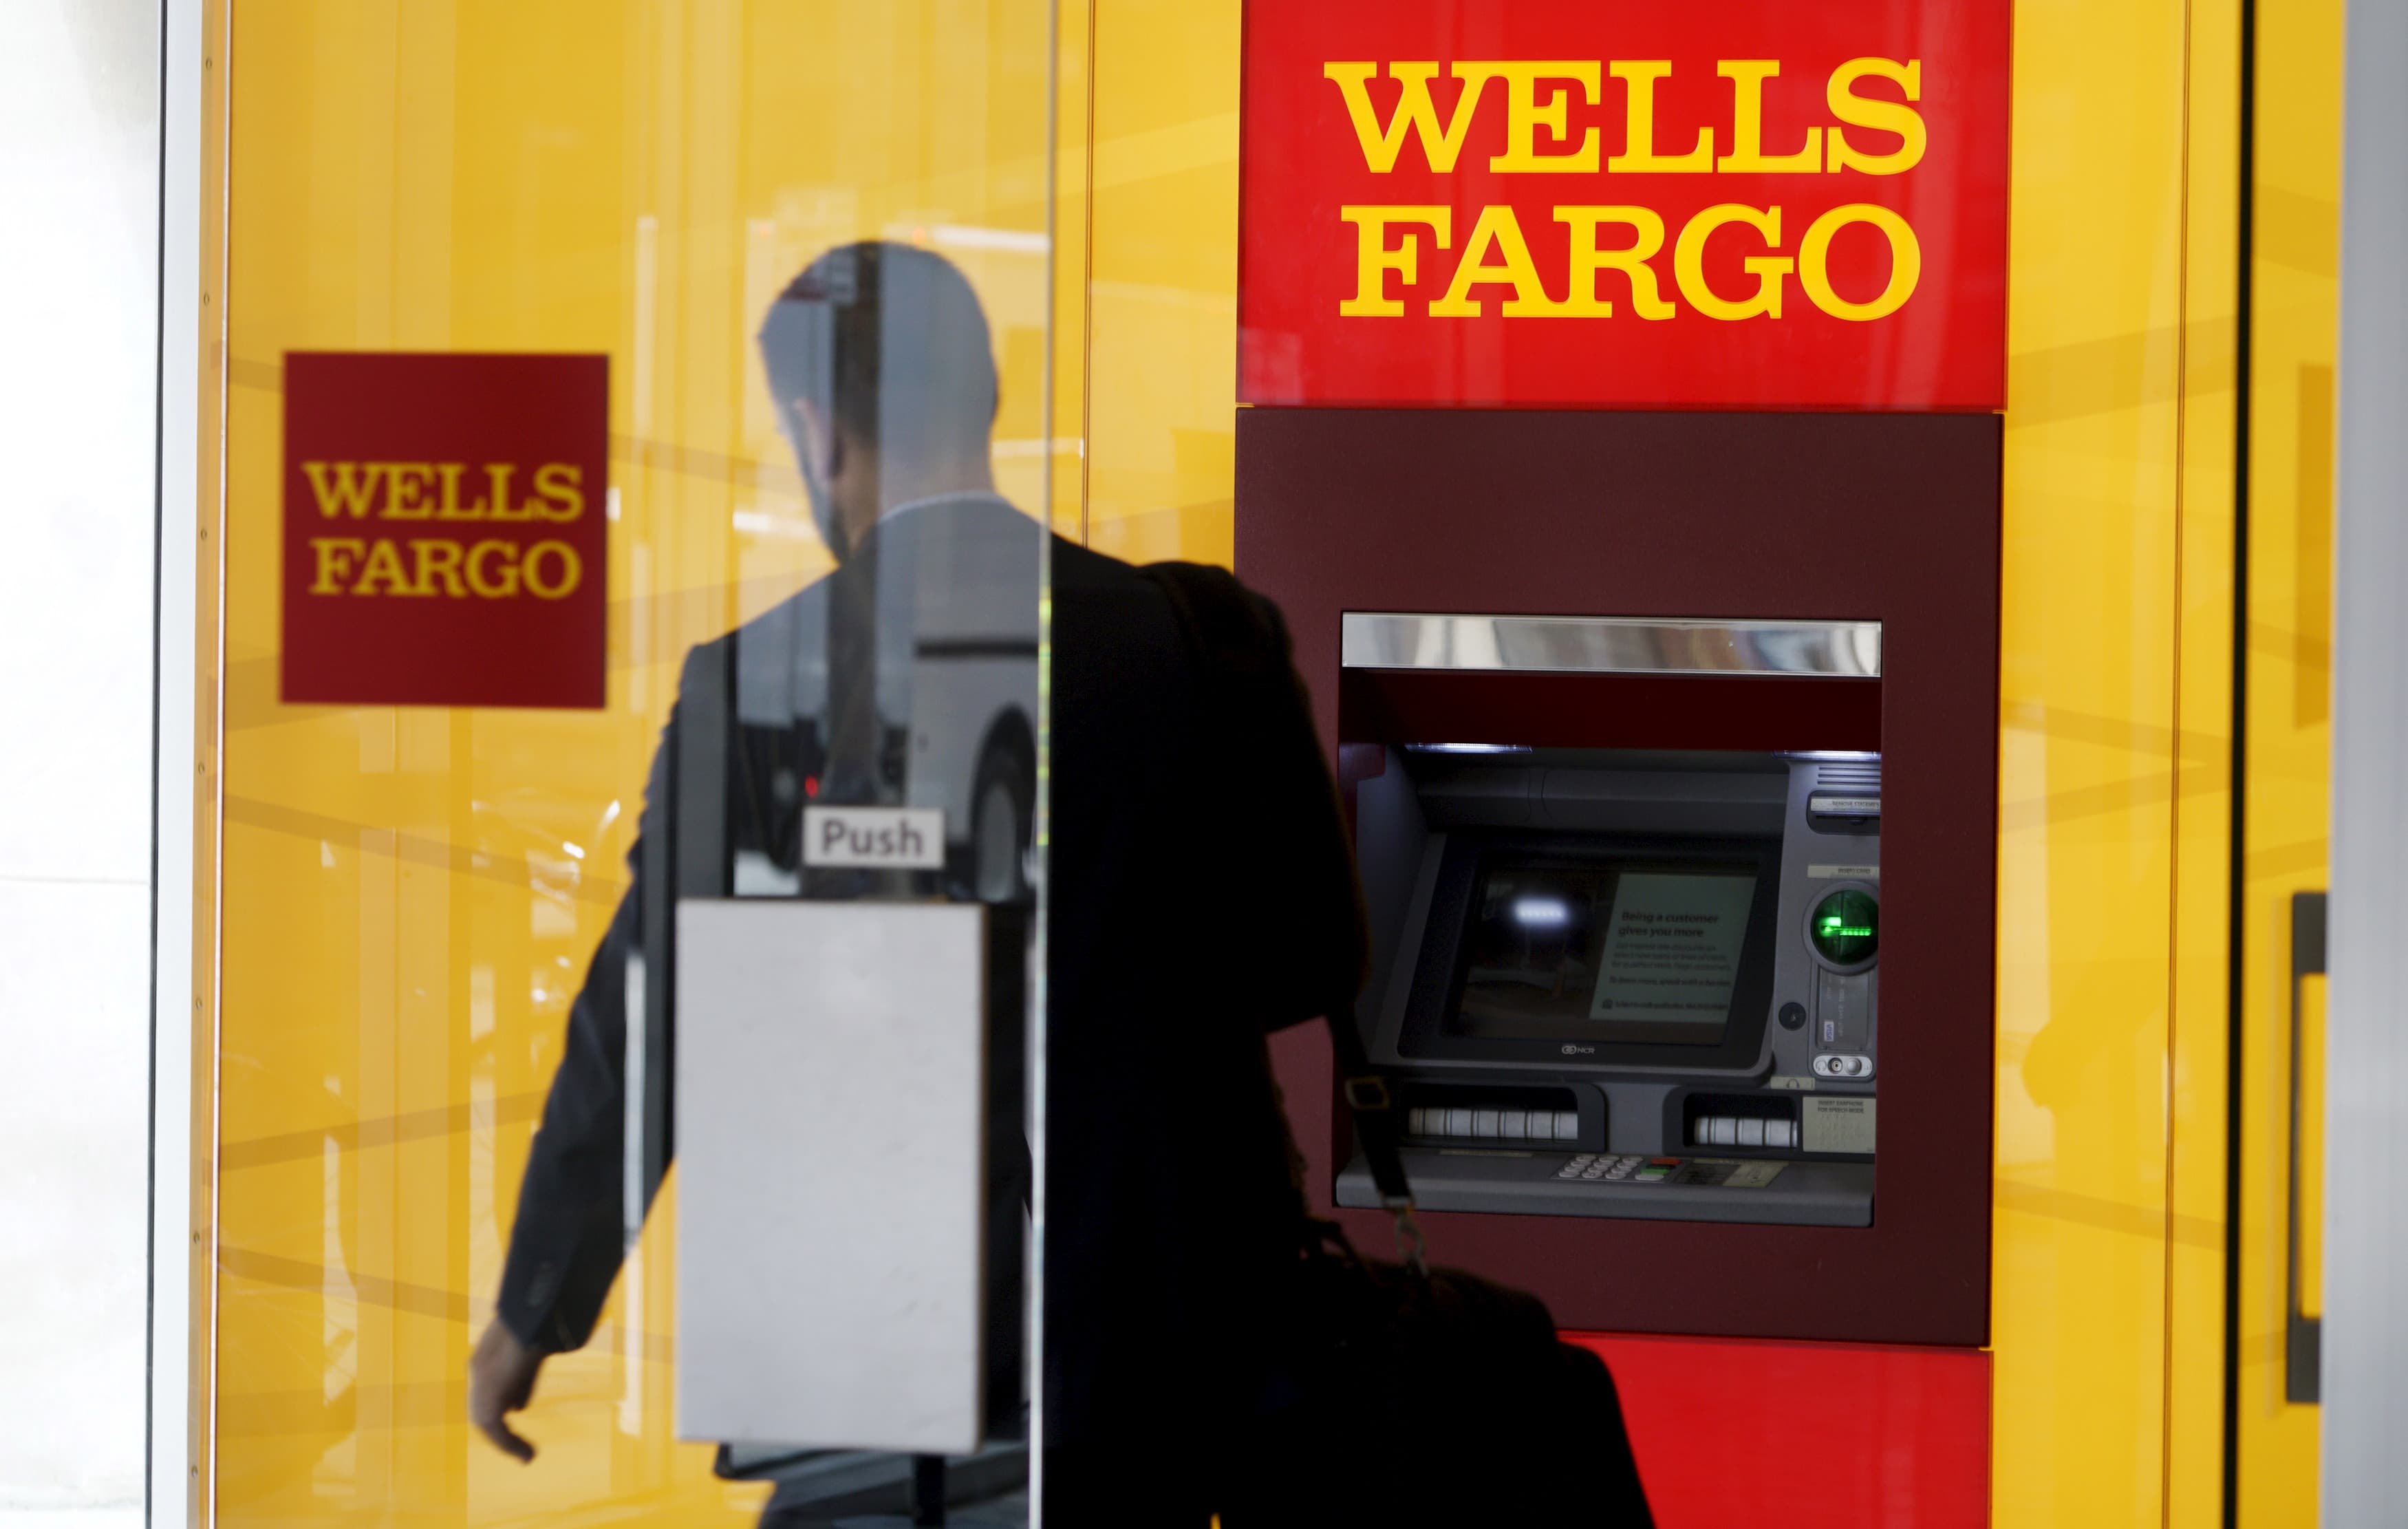 Wells Fargo беше осъден да плати 3.7 милиарда долара за минали скандали. Ето защо го виждаме като положително